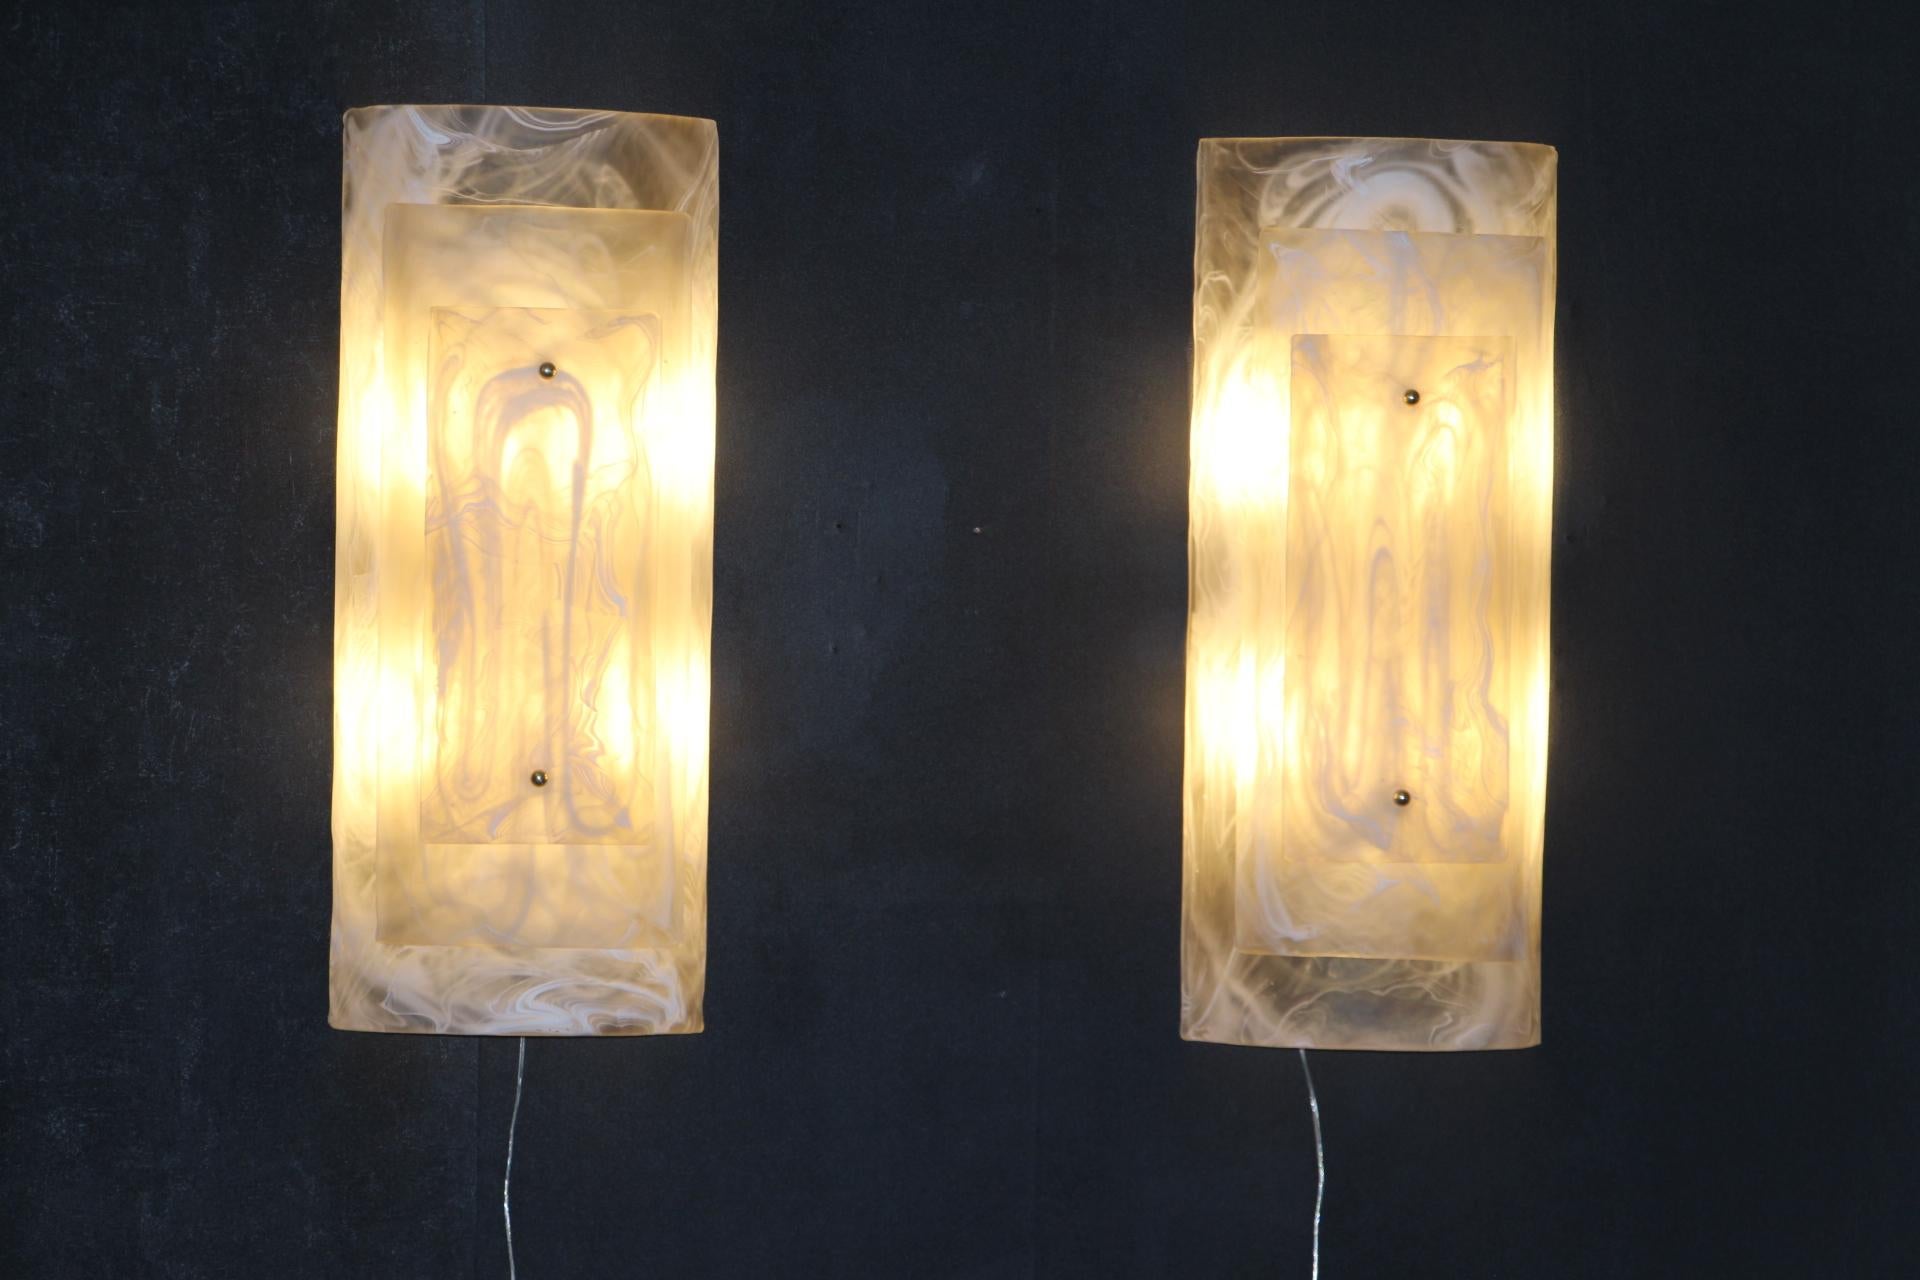 Dieses beeindruckende Paar von Murano-Glas-Leuchten ist wirklich ungewöhnlich.
Sie bestehen aus 3 Schichten gebogenem Glas, die mit 2 Messingstiften übereinander befestigt sind. 
Die Glasstücke sind ein Kunstwerk, das wie Alabaster oder Marmor